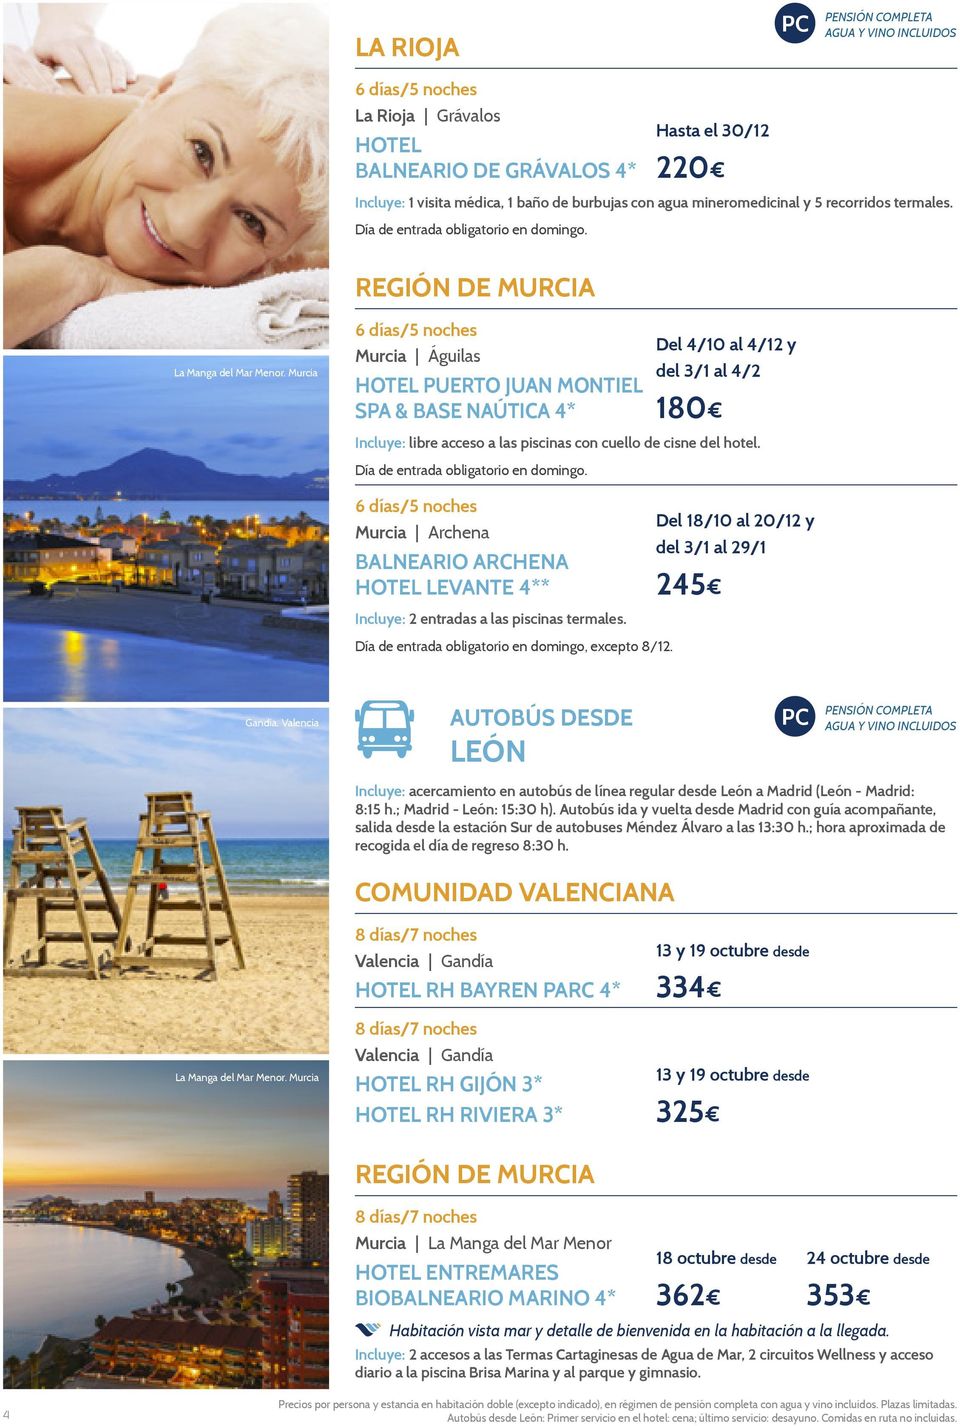 Murcia Murcia Águilas HOTEL PUERTO JUAN MONTIEL SPA & BASE NAÚTICA 4* Del 4/10 al 4/12 y del 3/1 al 4/2 180 Incluye: libre acceso a las piscinas con cuello de cisne del hotel.